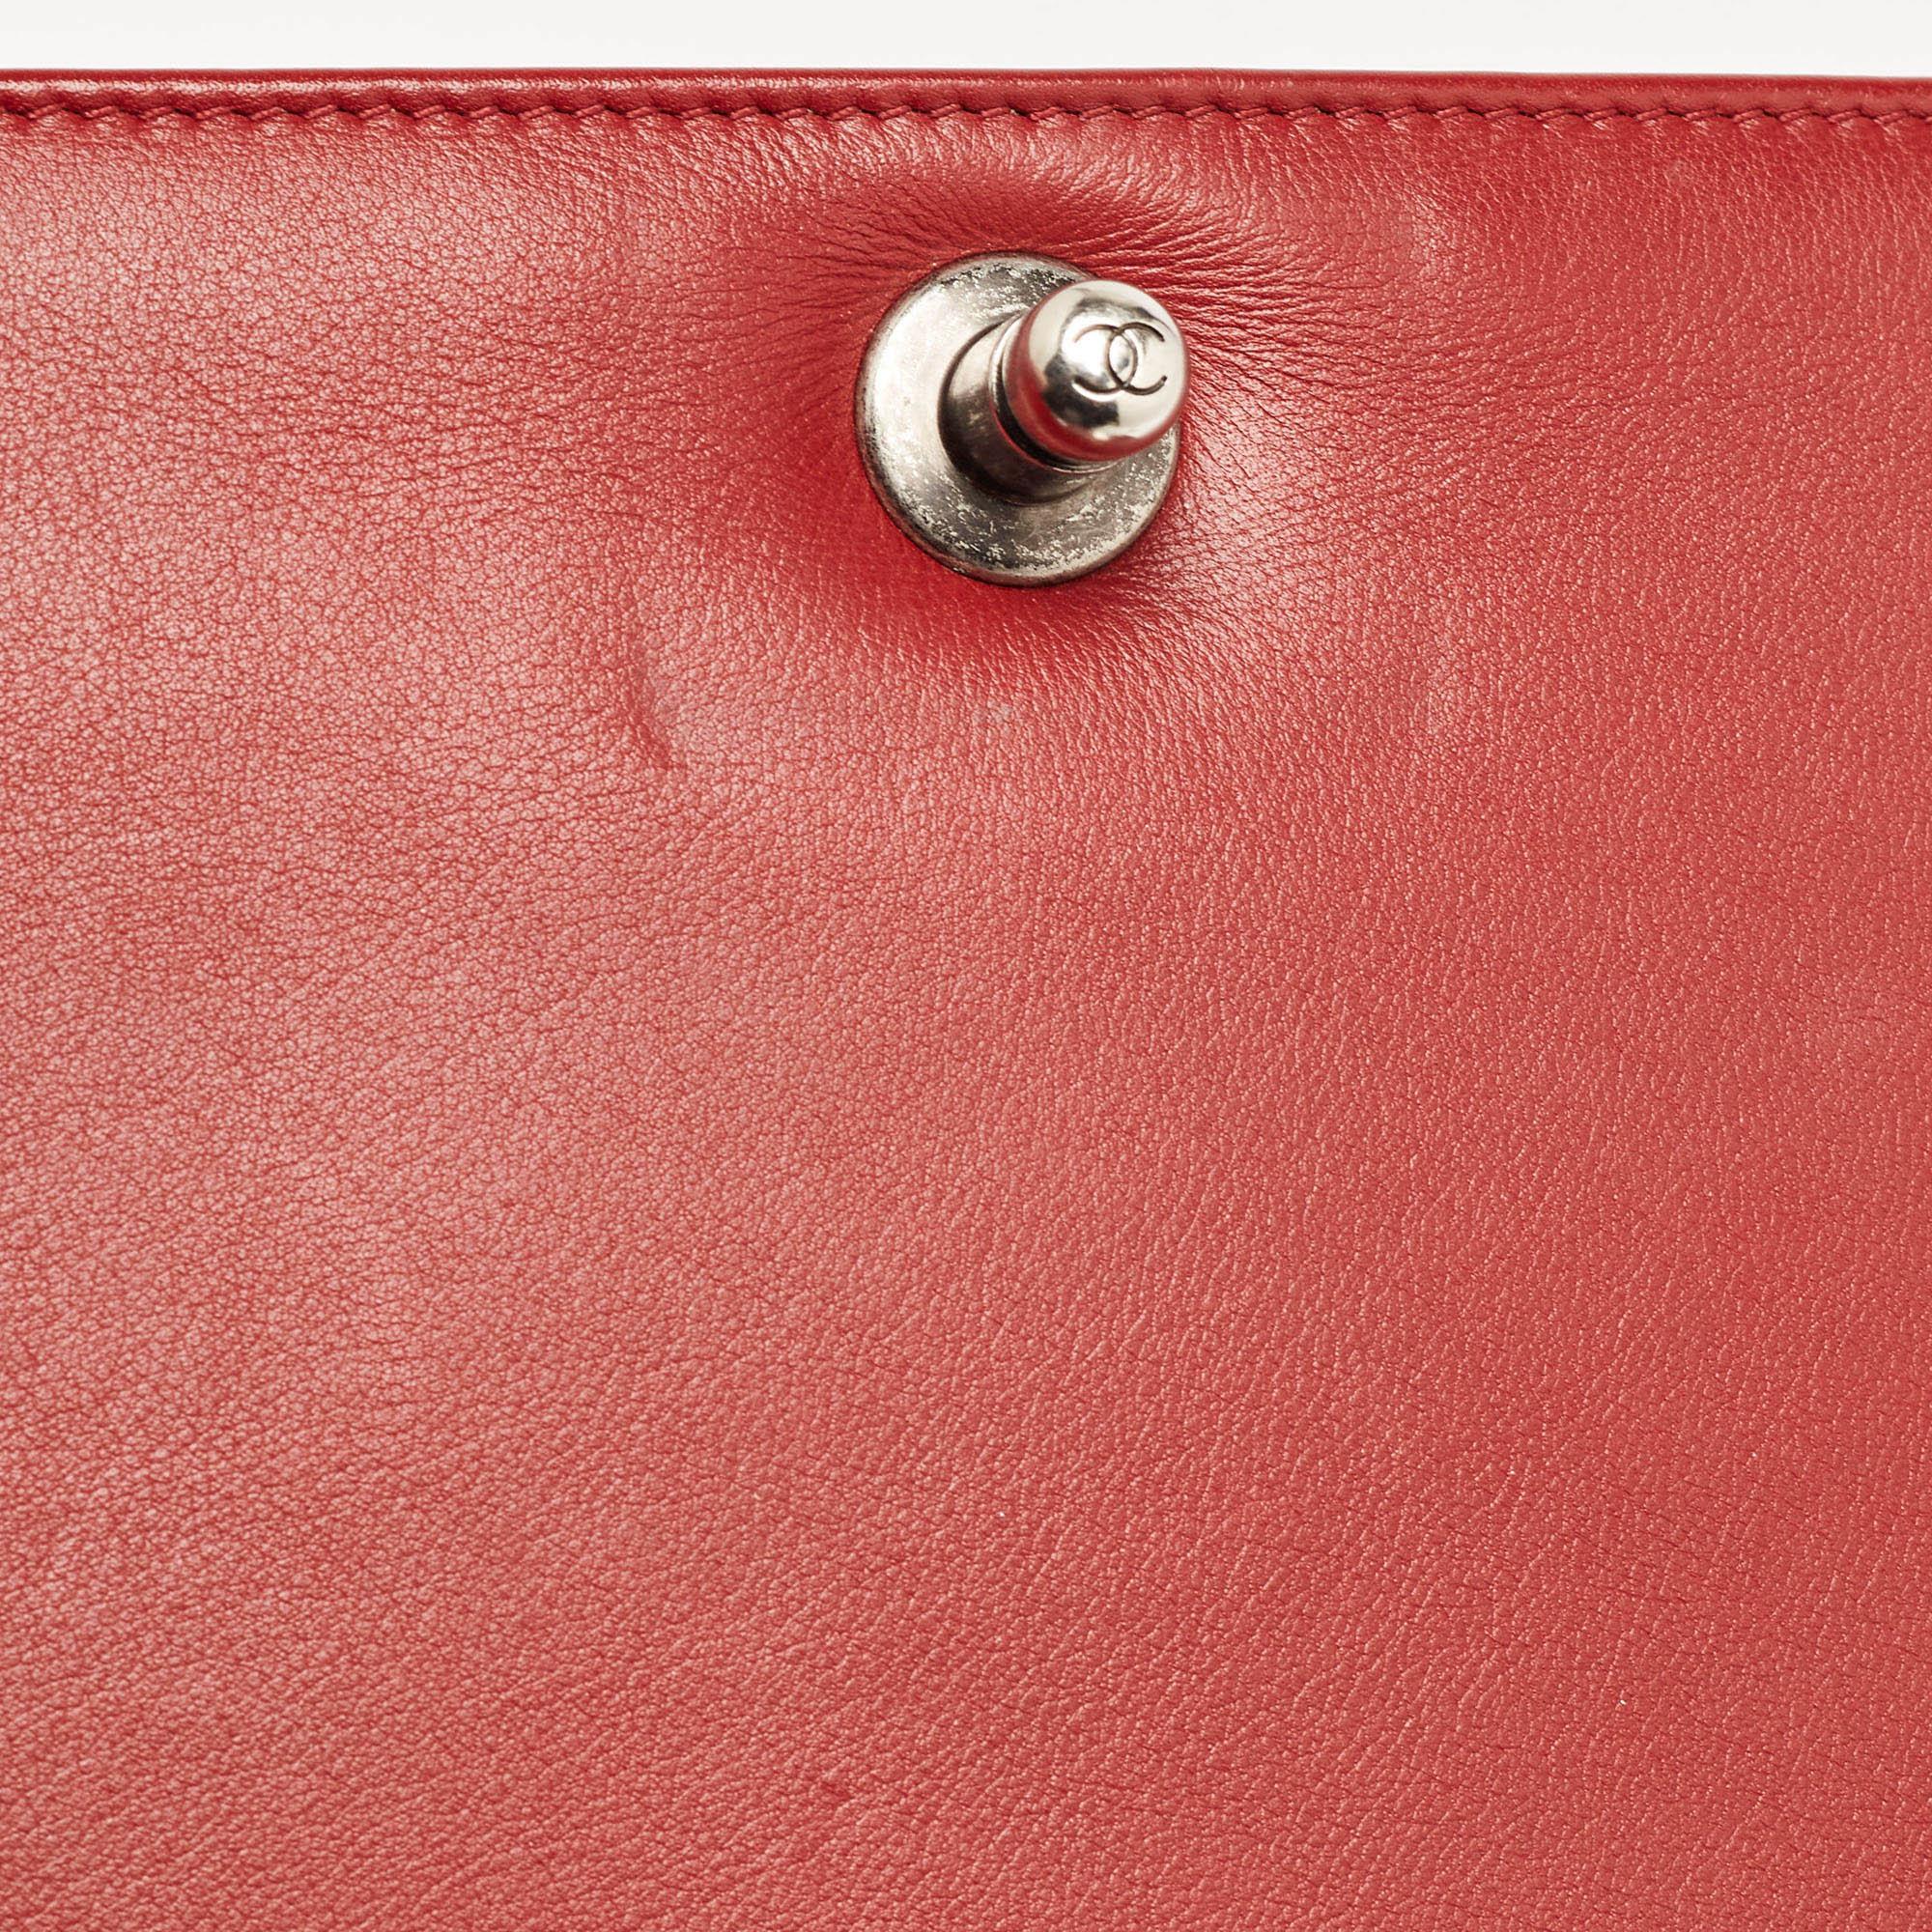 Chanel Red Chevron Leather Medium Boy Bag 2